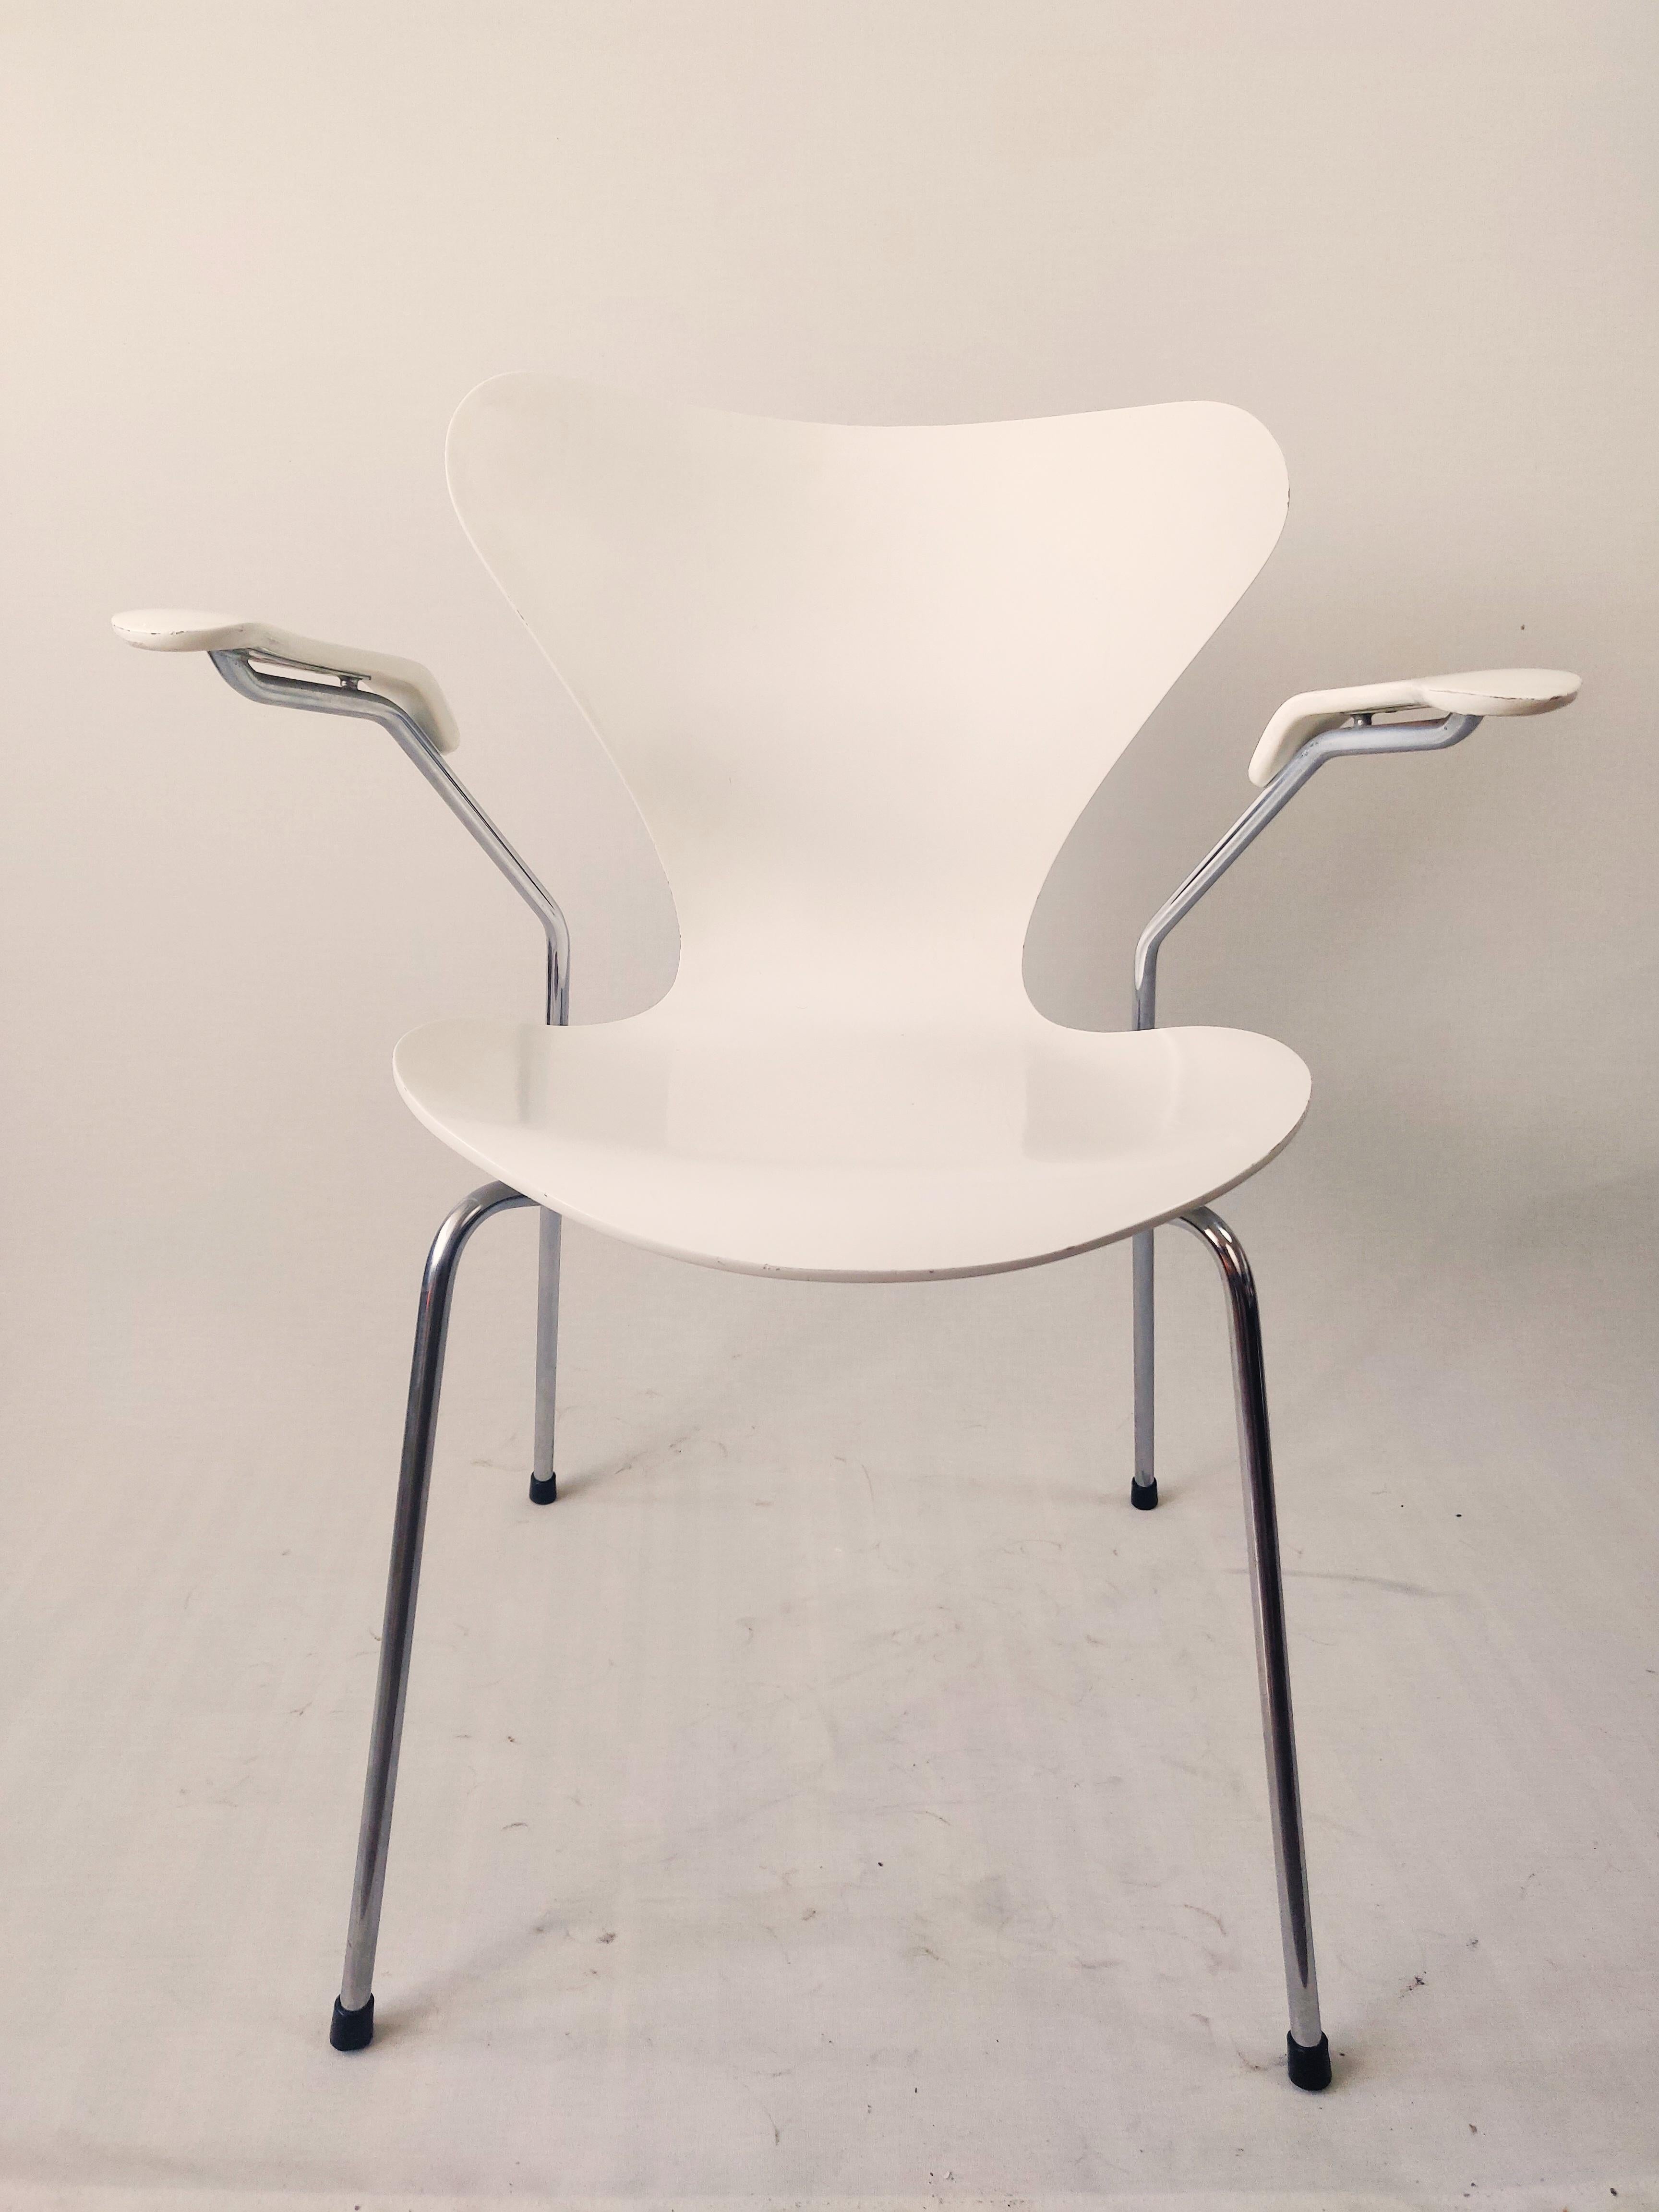 La Série 7 conçue par Arne Jacobsen est l'une des chaises les plus emblématiques de l'histoire de Fritz Hansen et peut-être aussi de l'histoire du mobilier. La chaise en placage moulé sous pression est une évolution de la chaise Ant classique.
la